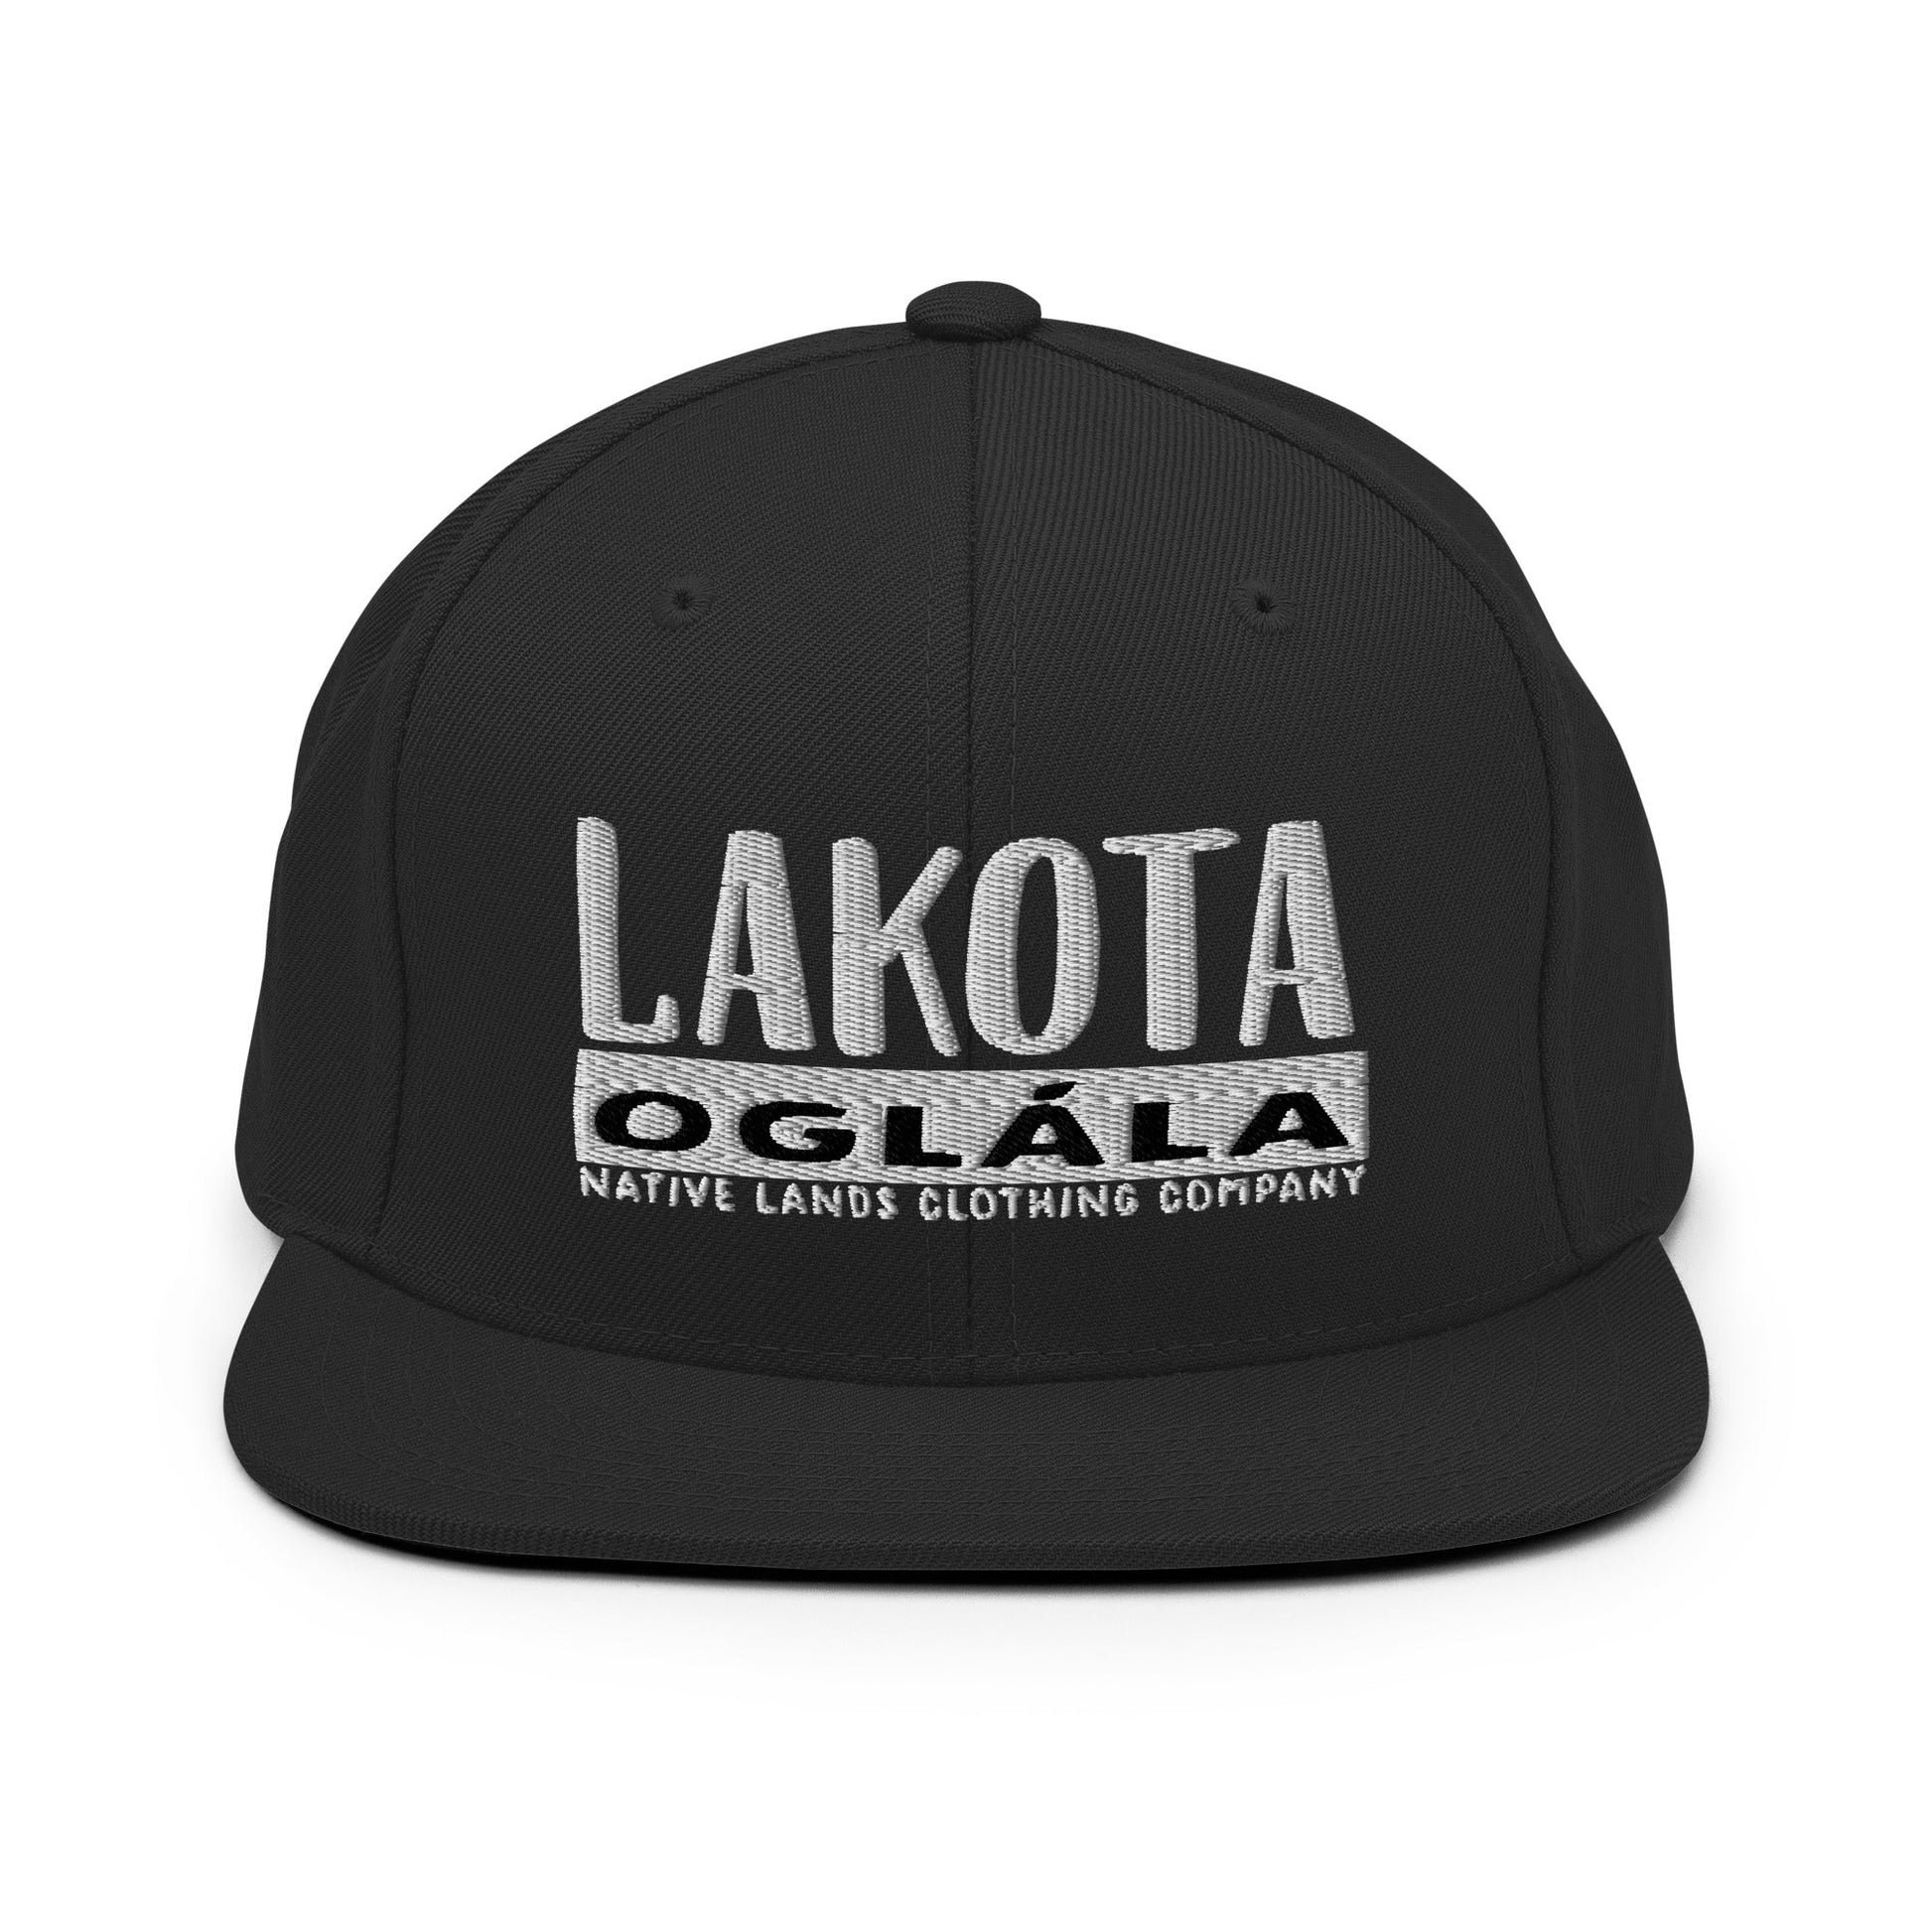 Lakota Oglala Snapback Hat Embroidered Native American $ 26.50 Snapback Embroidered Baseball Cap Native Lands Clothing Company LLC